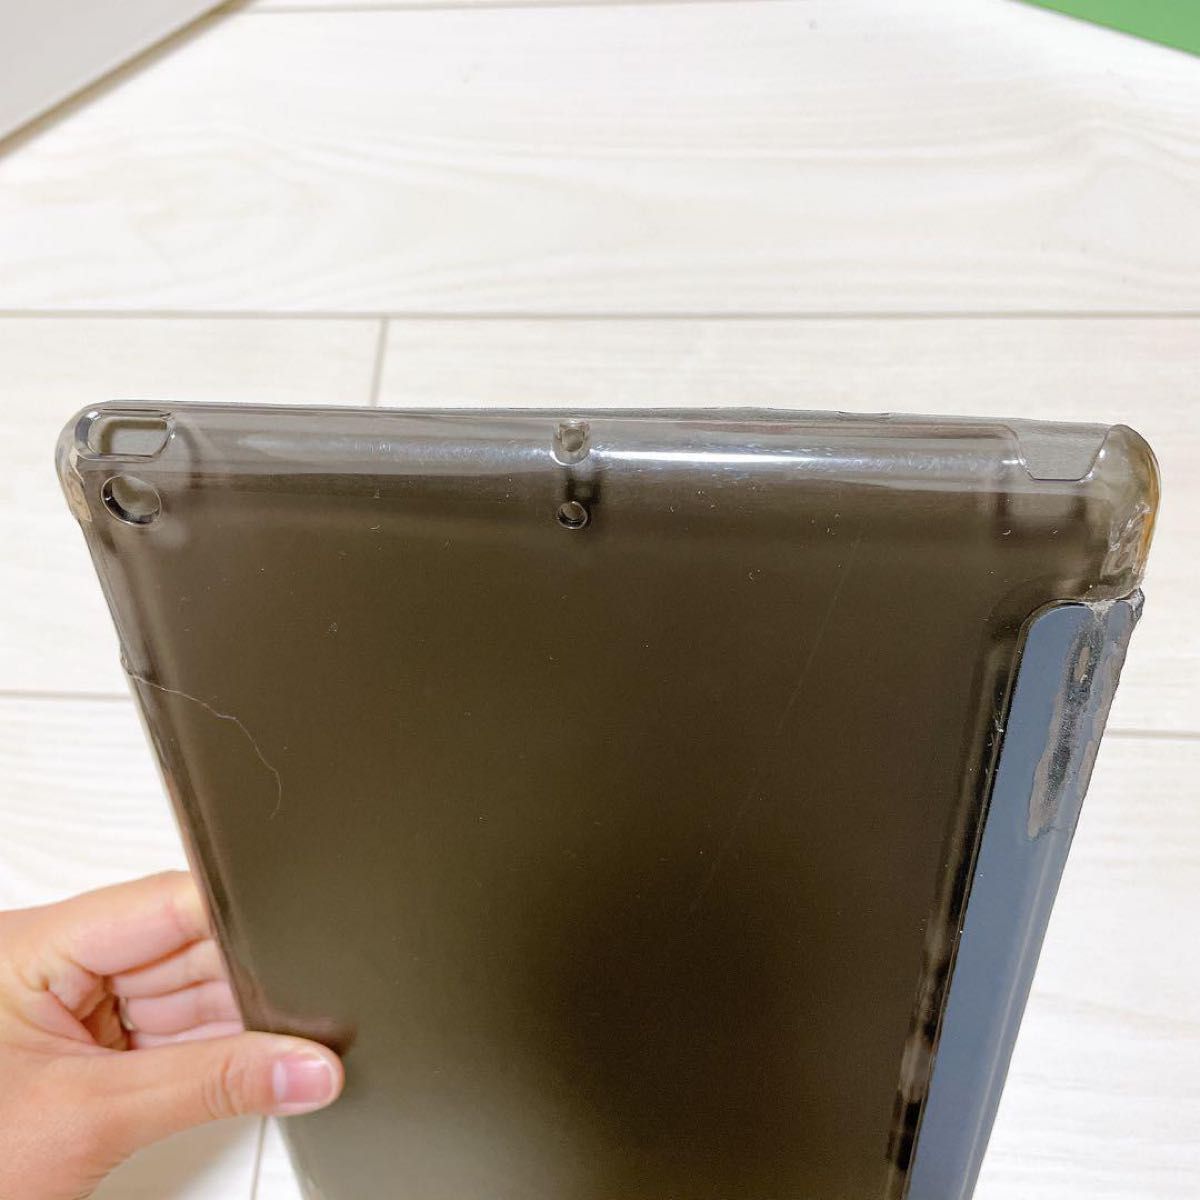 ProCase iPadケース 超薄型 軽量 スタンド機能 スマートケース カバー